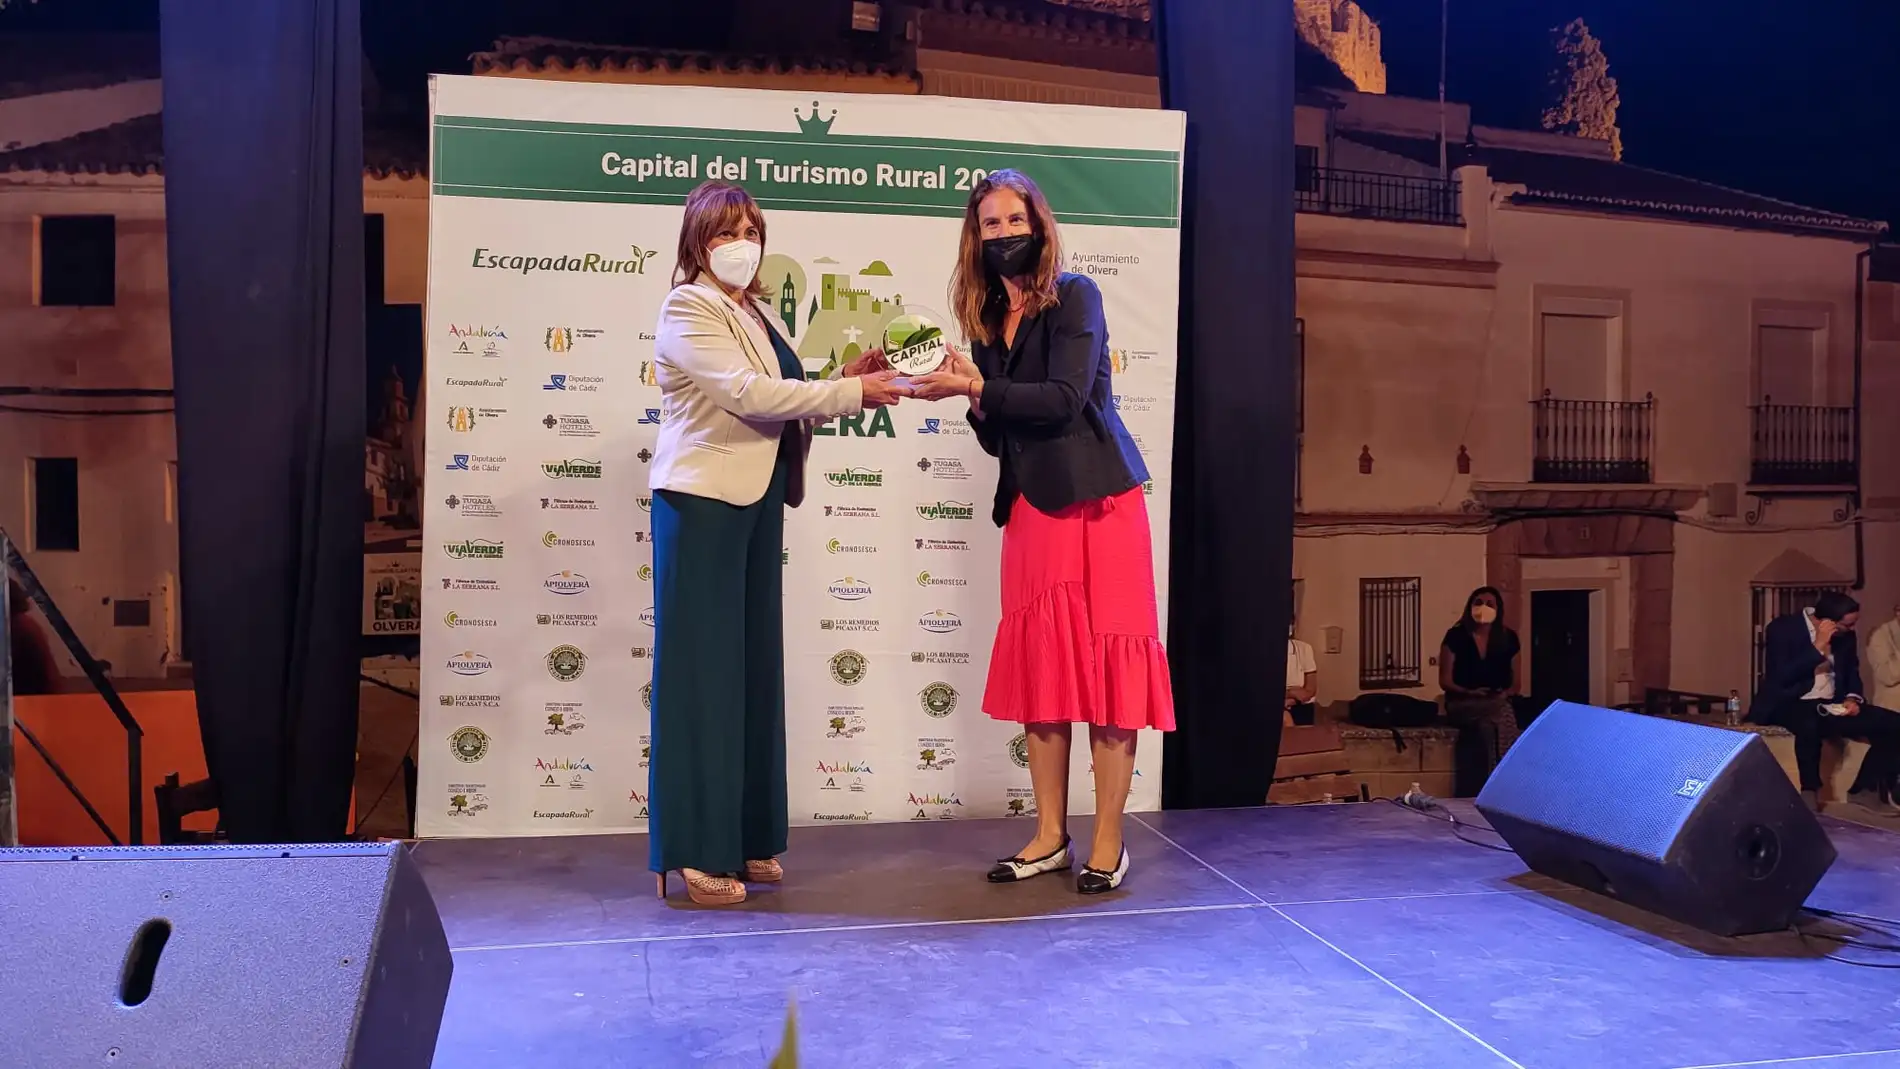 Yeste recibe el galardón como finalista de la Capital del Turismo Rural 2021